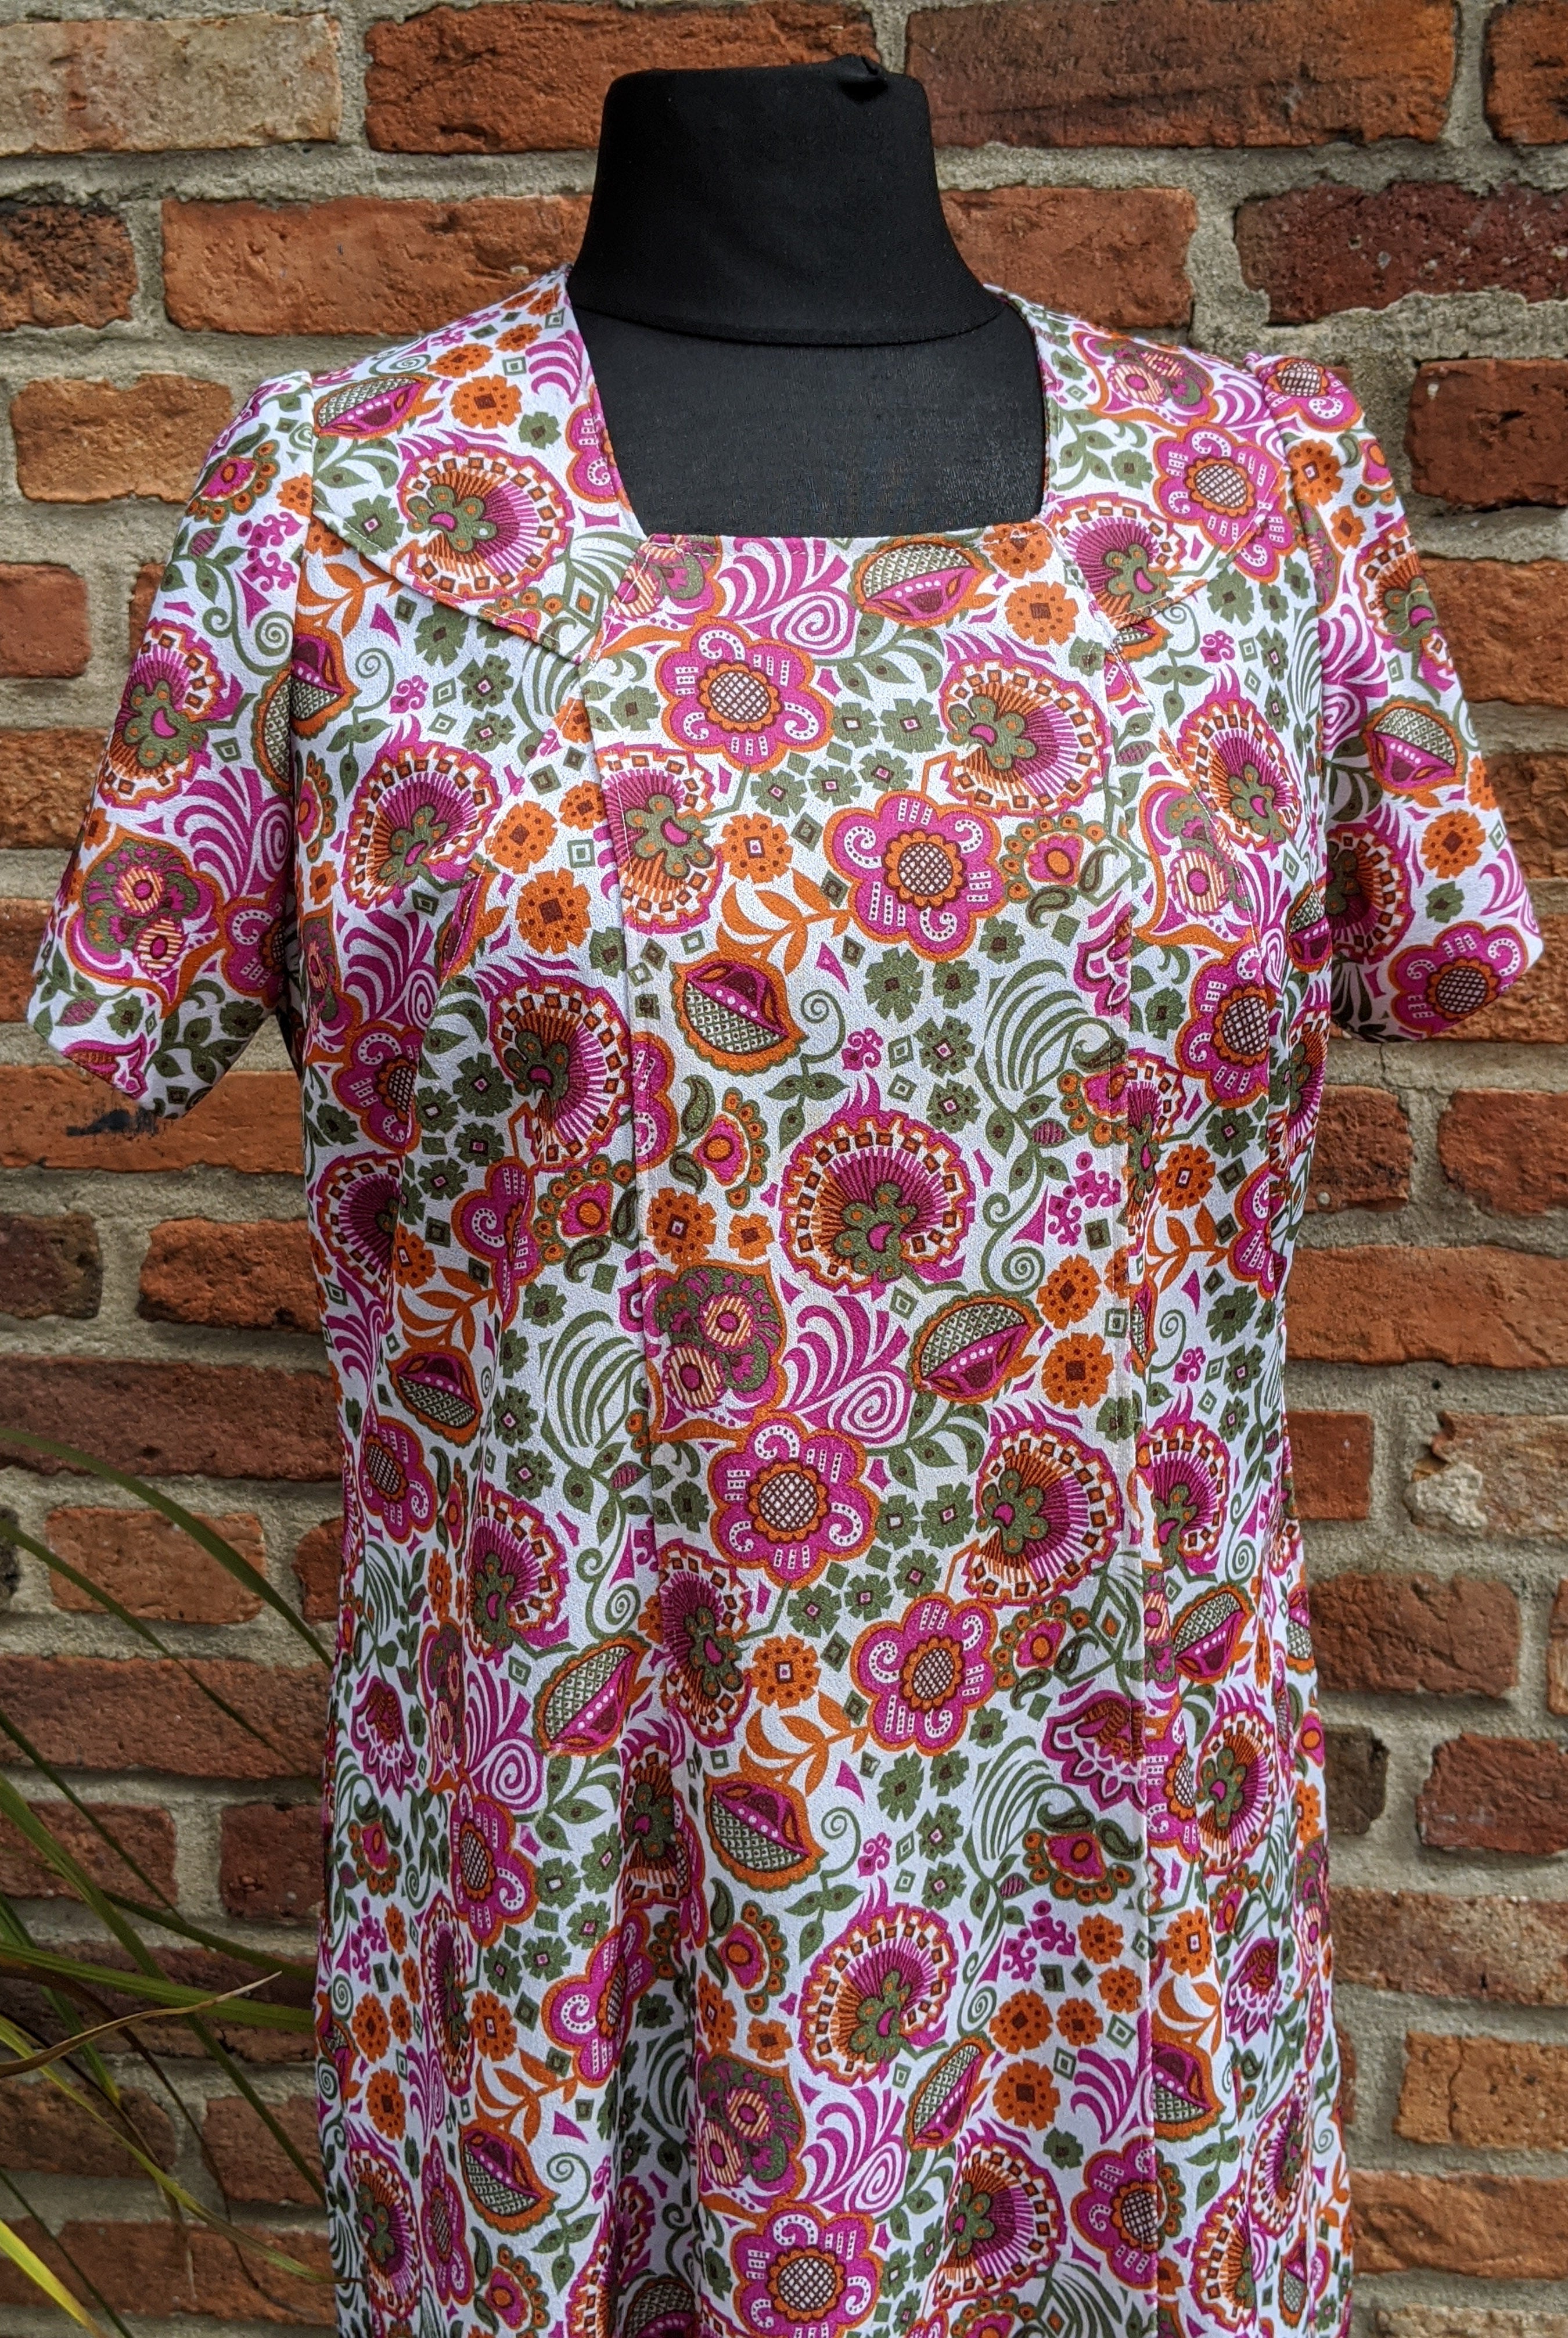 Vintage bold floral crimplene dress size 16/18